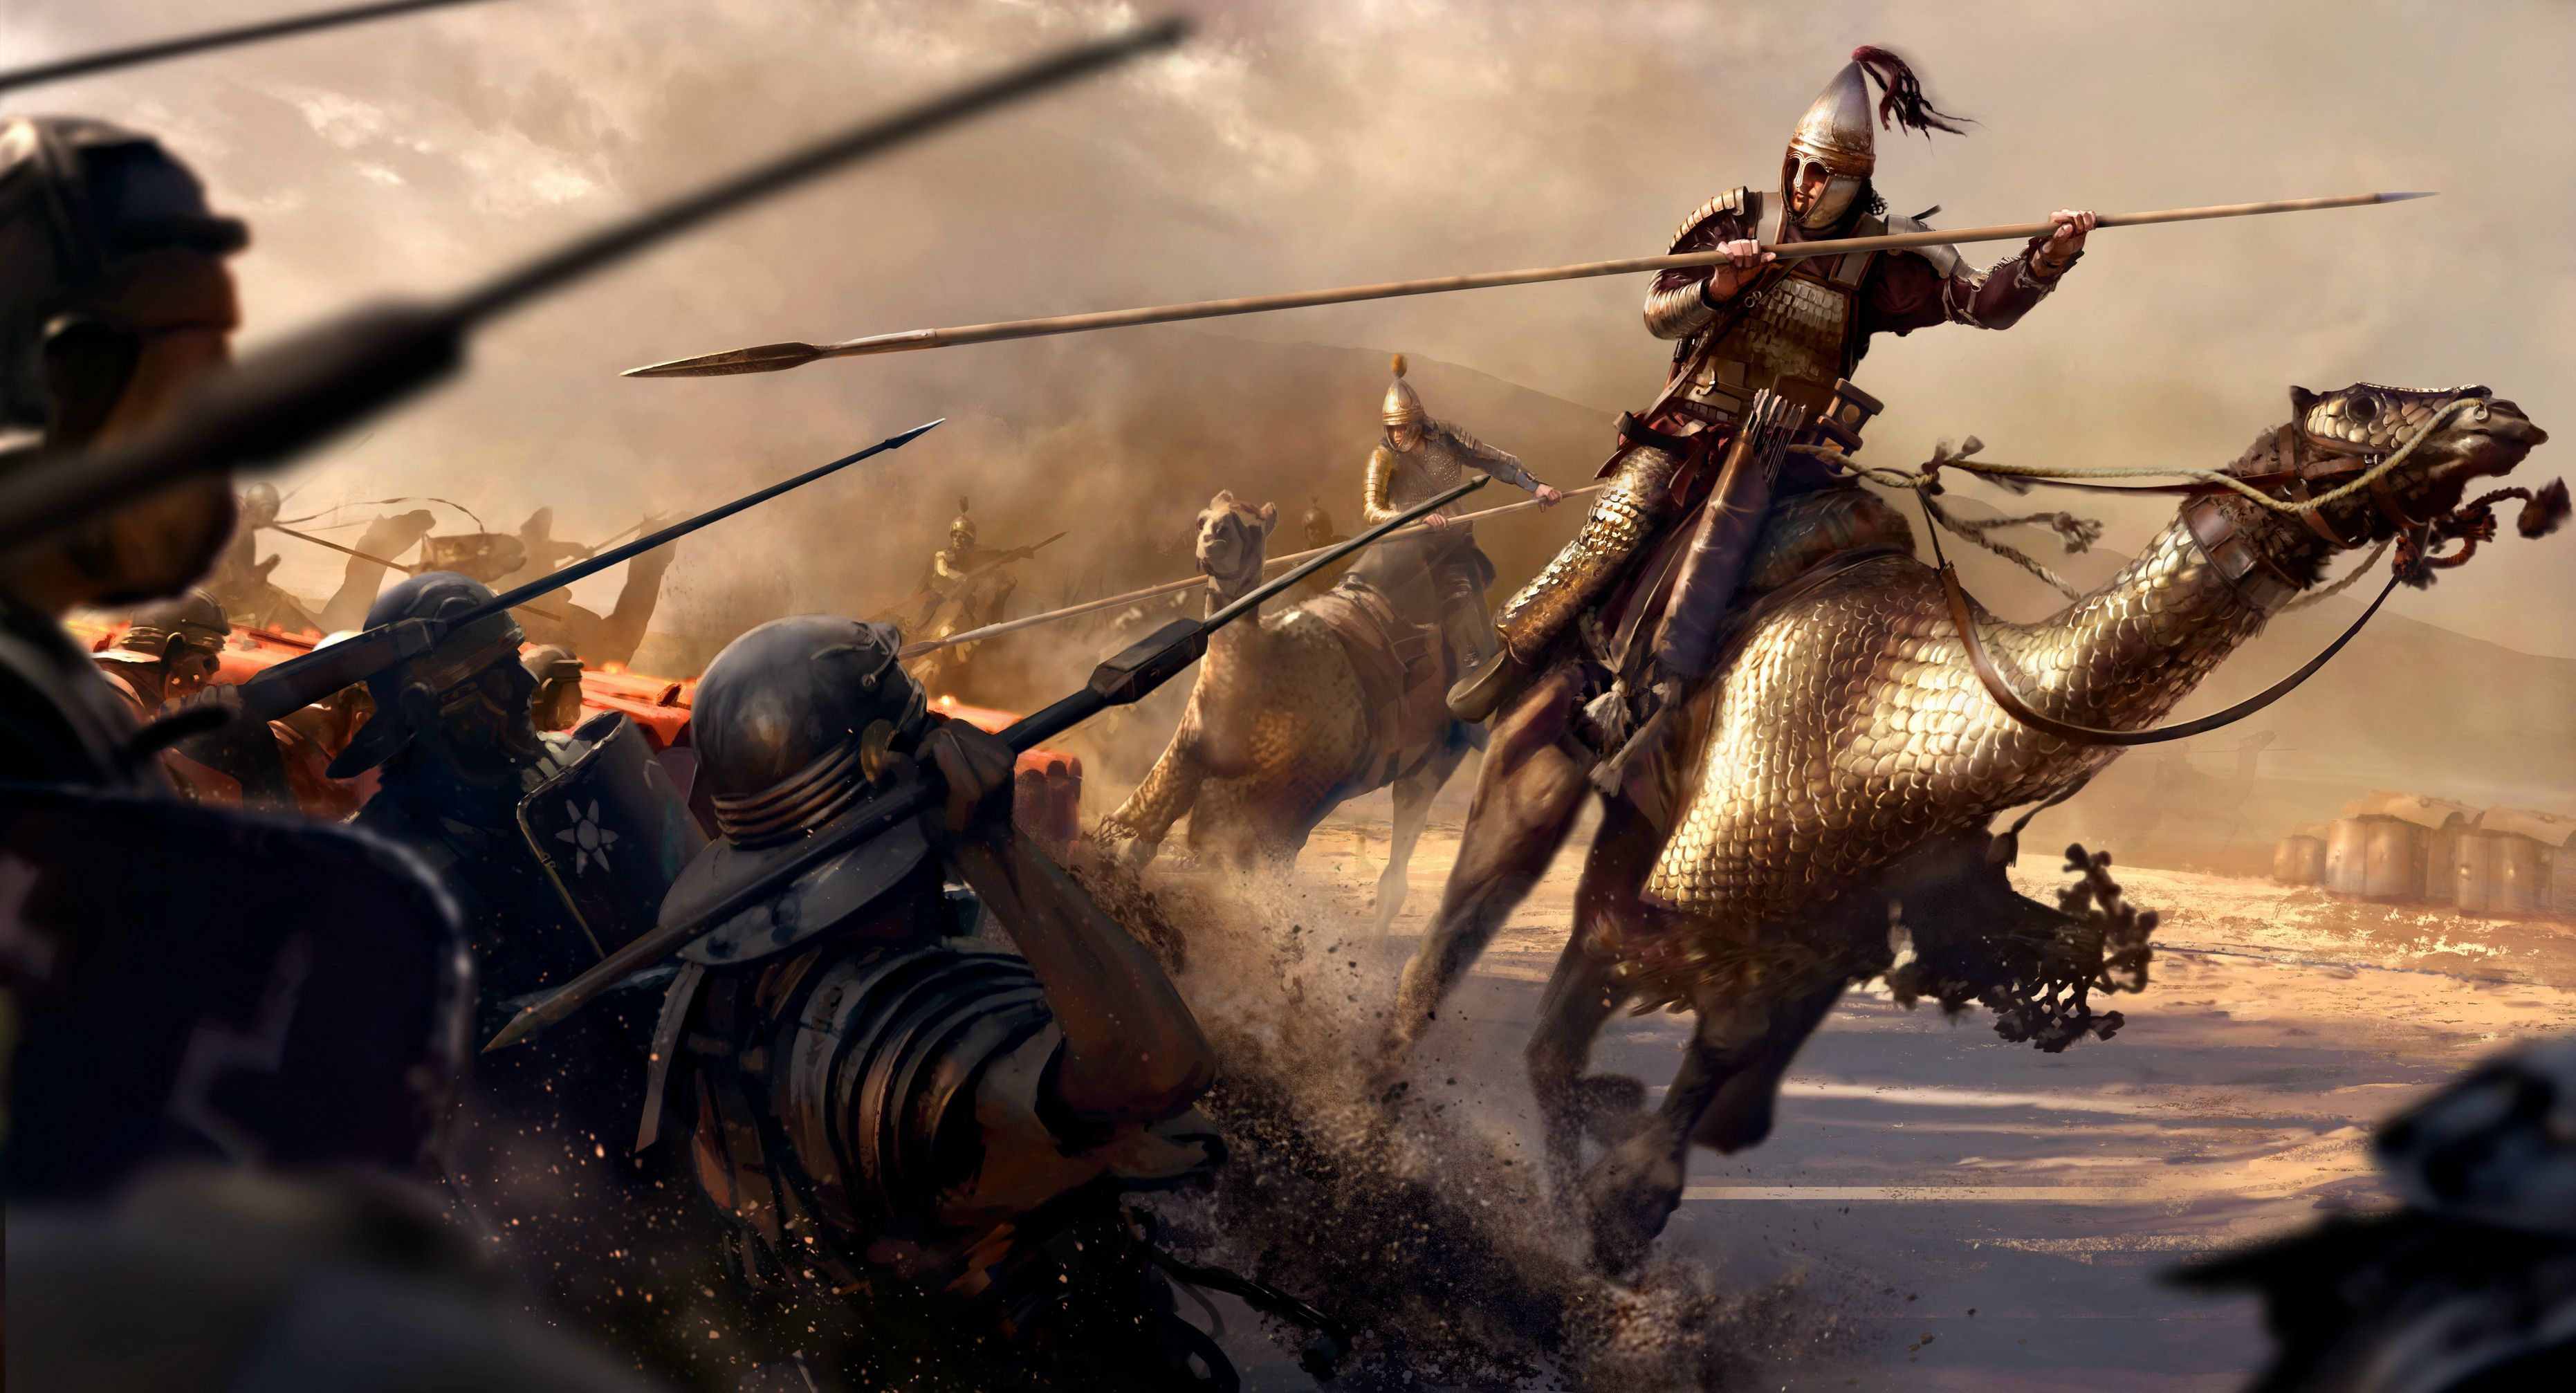 Roman Soldier In Battle Wallpaper | 3724x2014 | ID:44161